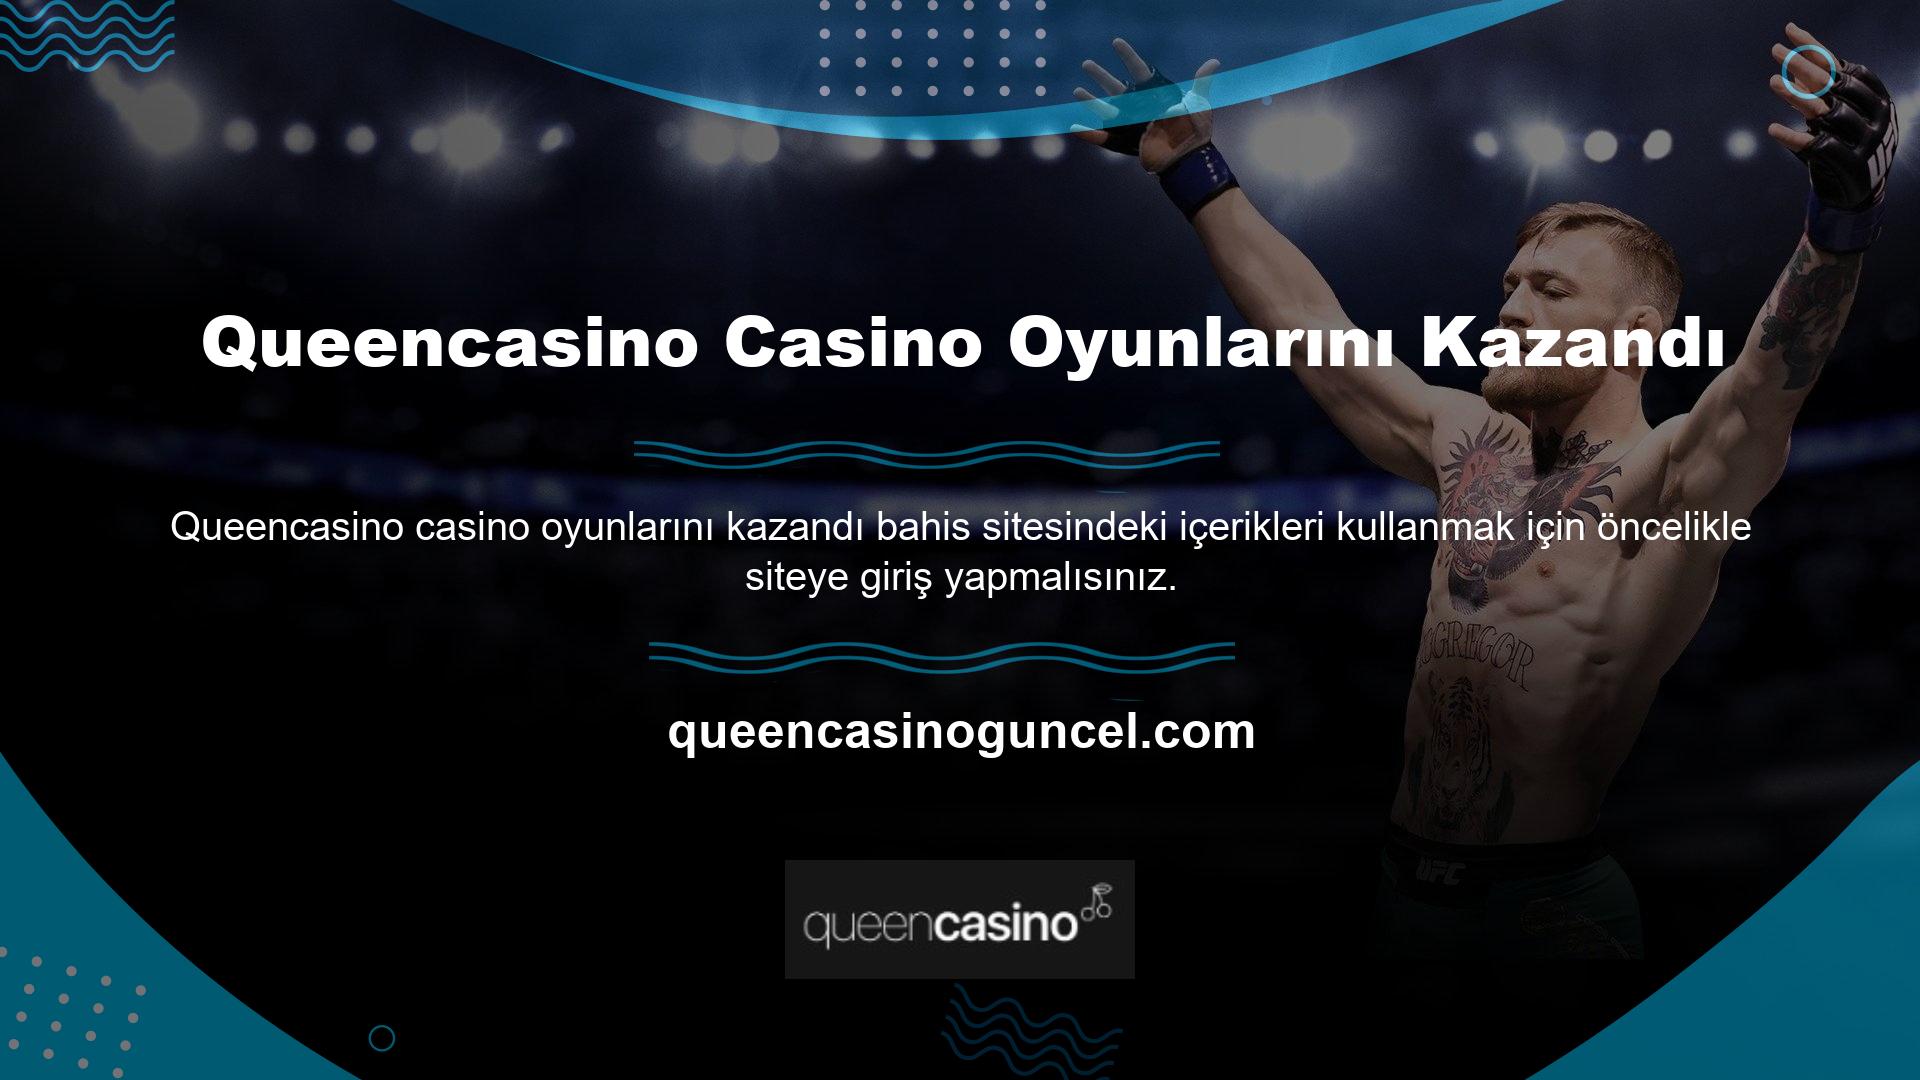 Bahis sitesine giriş yaptıktan sonra sitenin casino oyun seçeneklerini kullanabilirsiniz